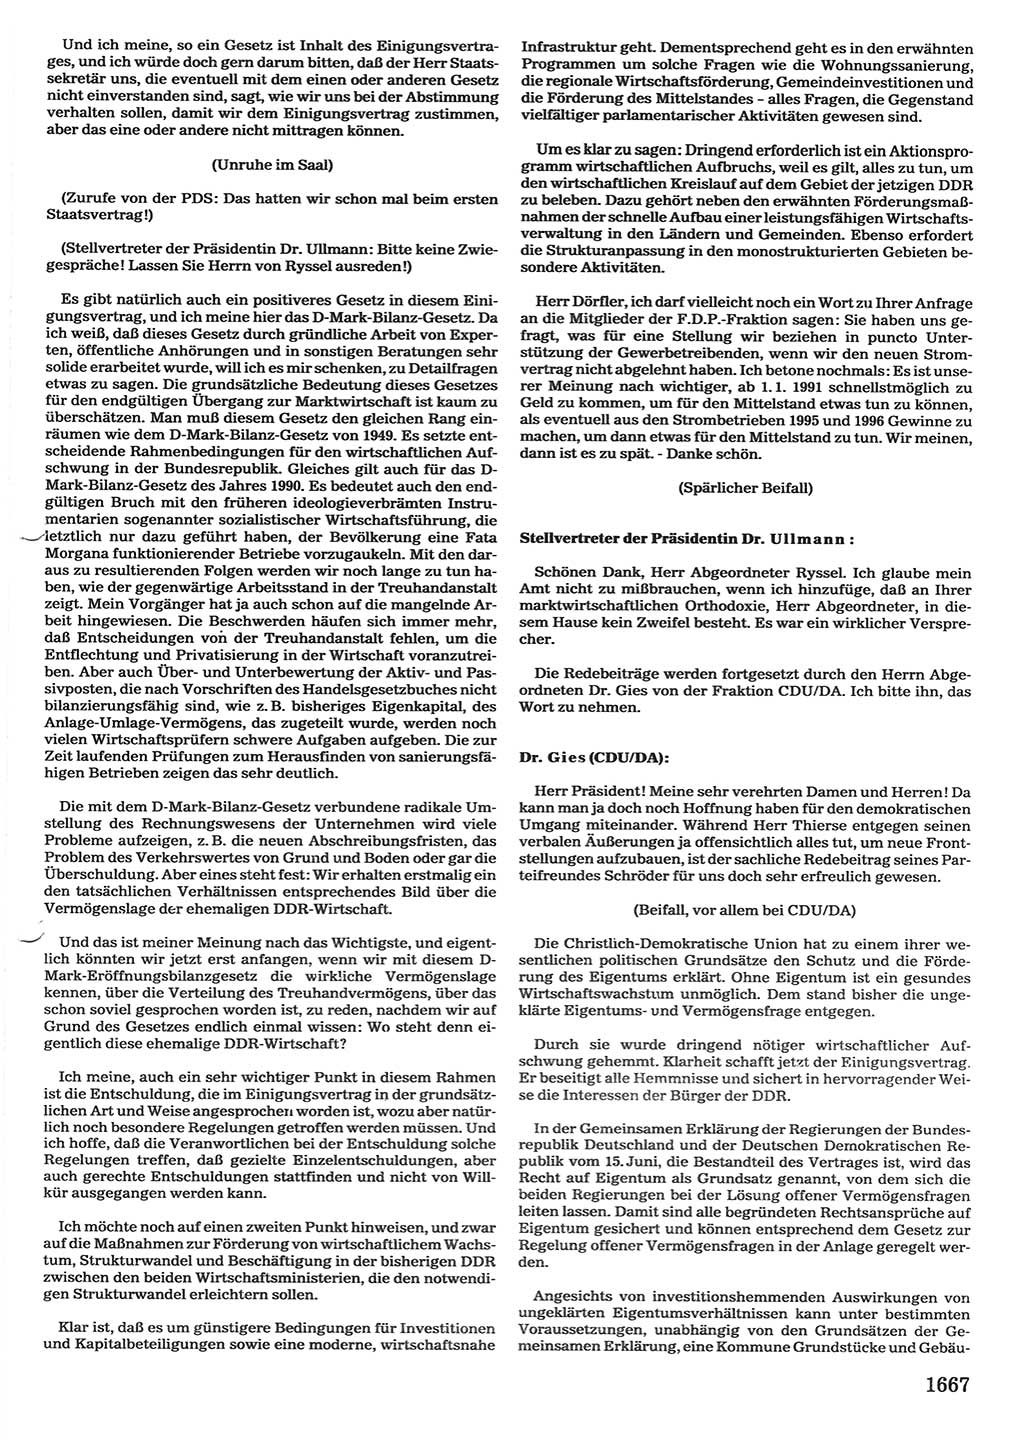 Tagungen der Volkskammer (VK) der Deutschen Demokratischen Republik (DDR), 10. Wahlperiode 1990, Seite 1667 (VK. DDR 10. WP. 1990, Prot. Tg. 1-38, 5.4.-2.10.1990, S. 1667)